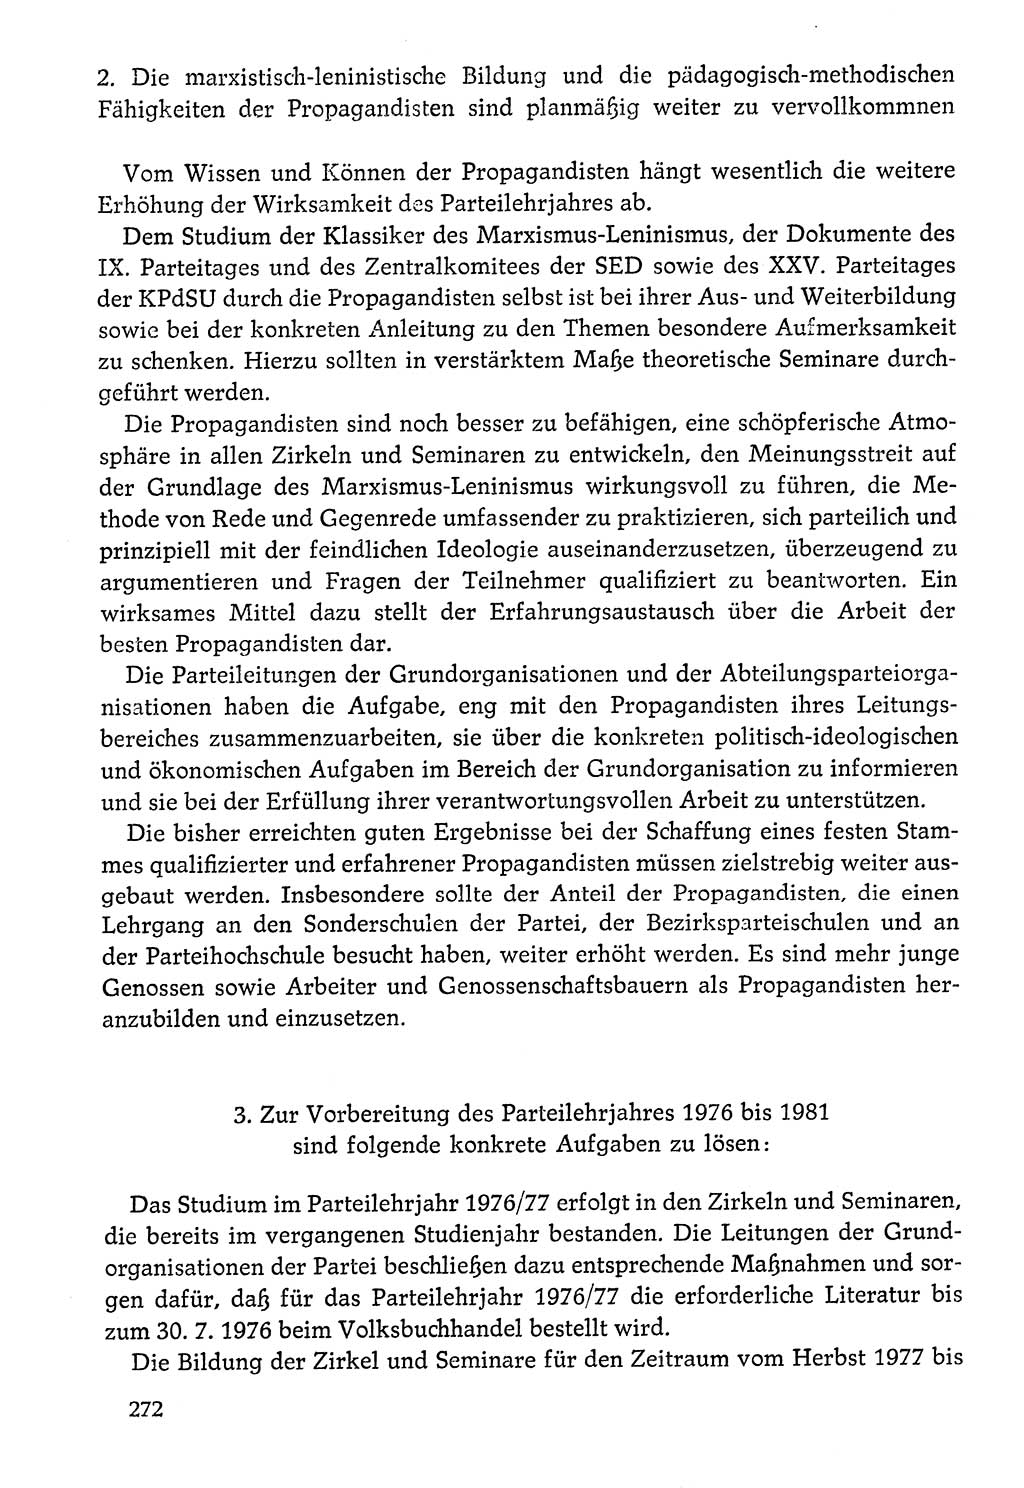 Dokumente der Sozialistischen Einheitspartei Deutschlands (SED) [Deutsche Demokratische Republik (DDR)] 1976-1977, Seite 272 (Dok. SED DDR 1976-1977, S. 272)